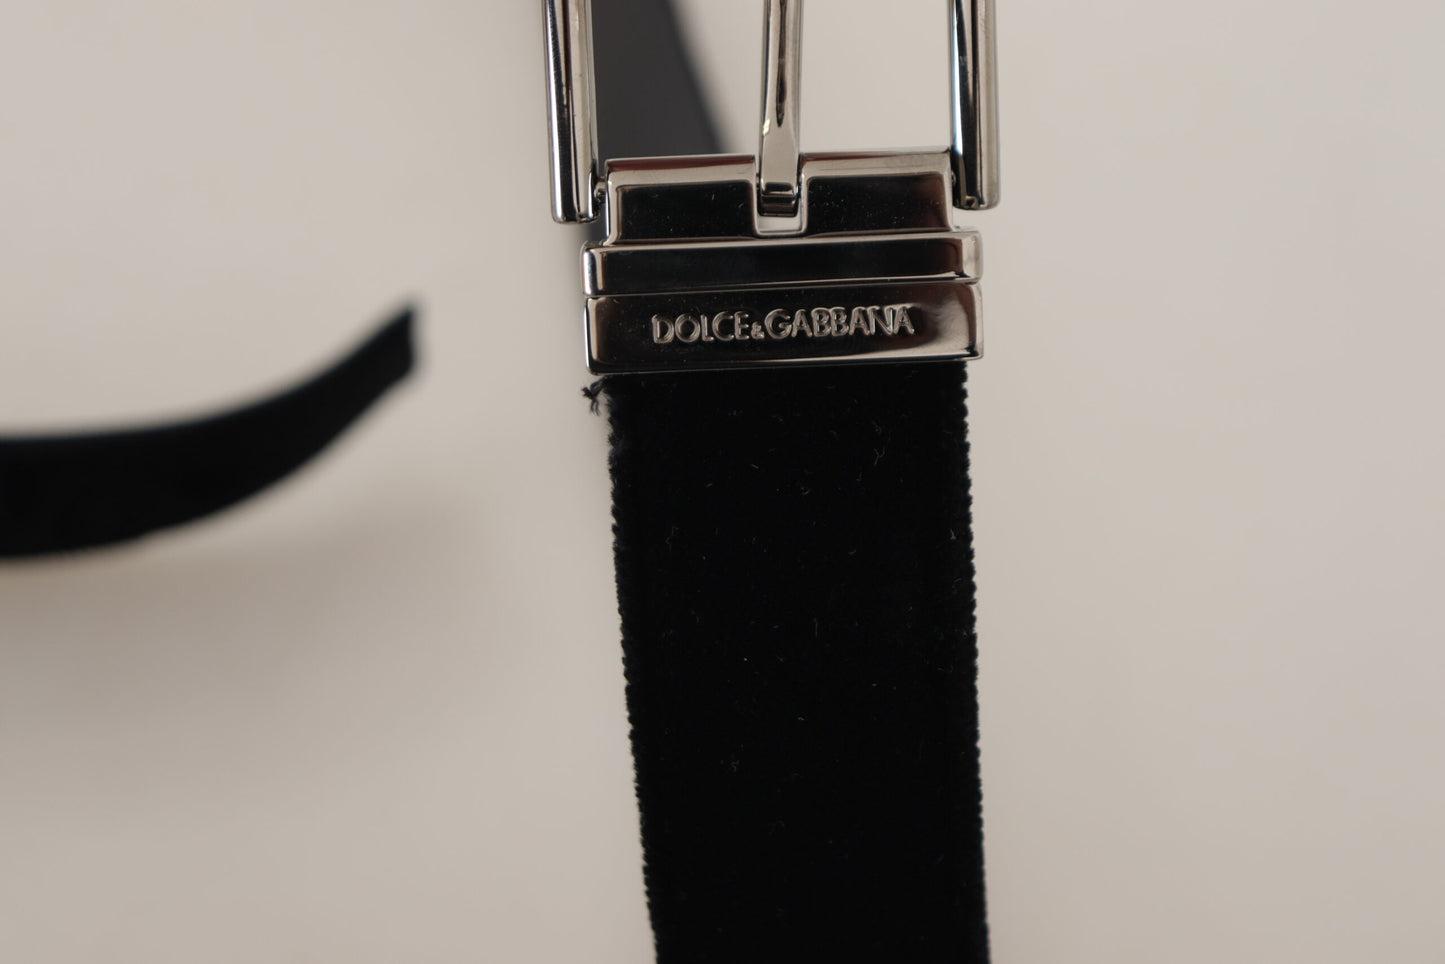 Sophisticated Velvet Leather Belt